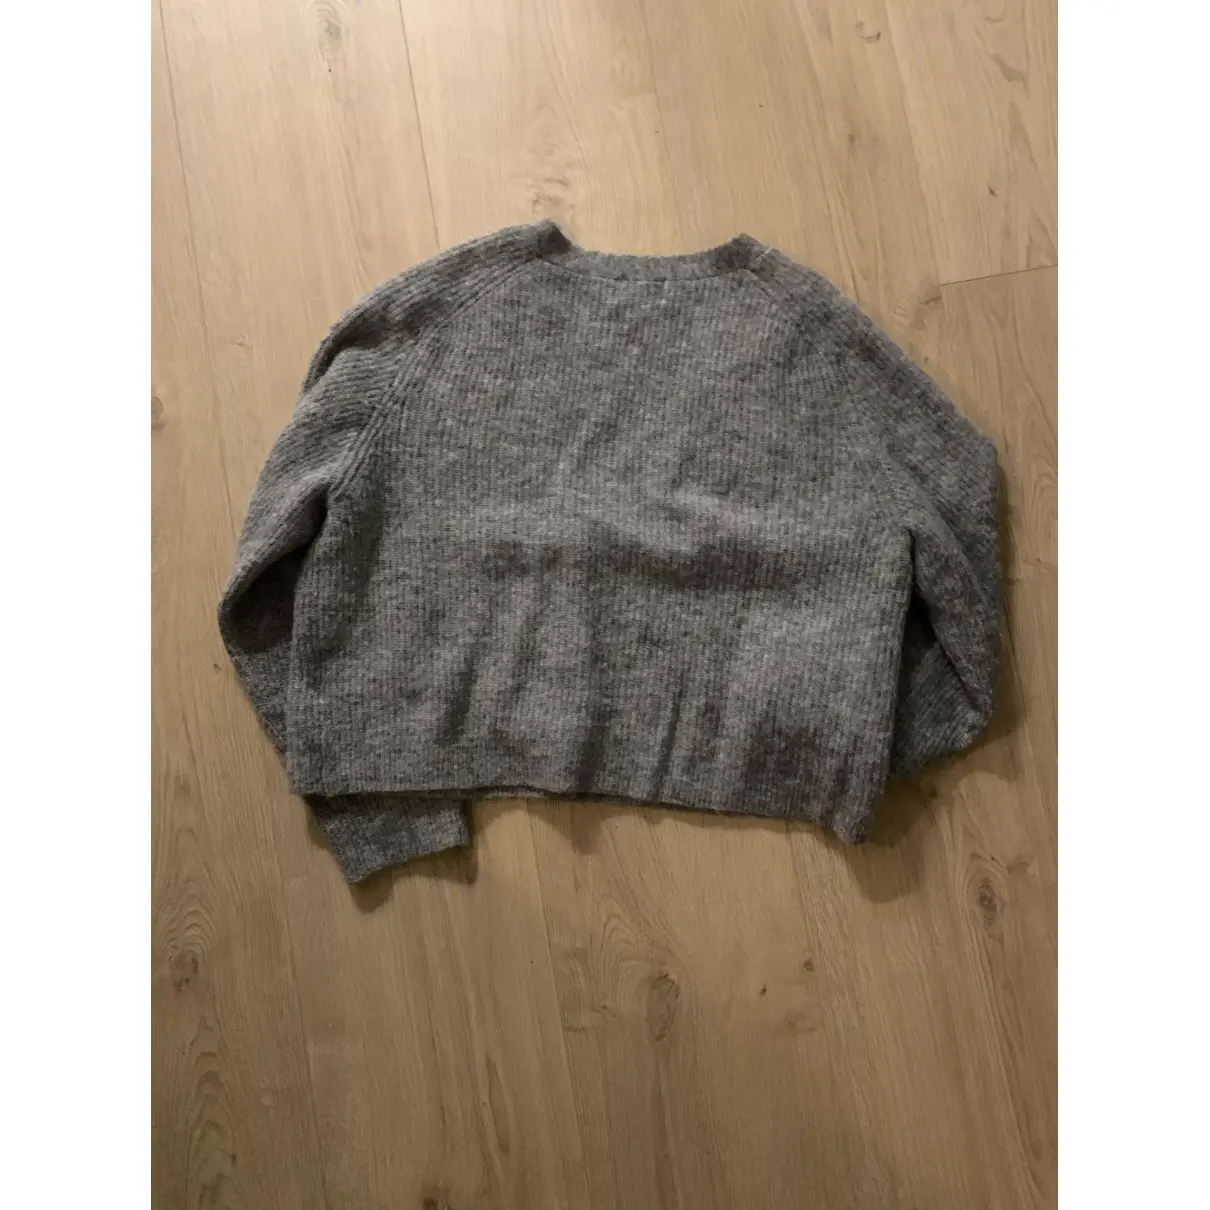 Buy Ganni Fall Winter 2019 wool cardigan online